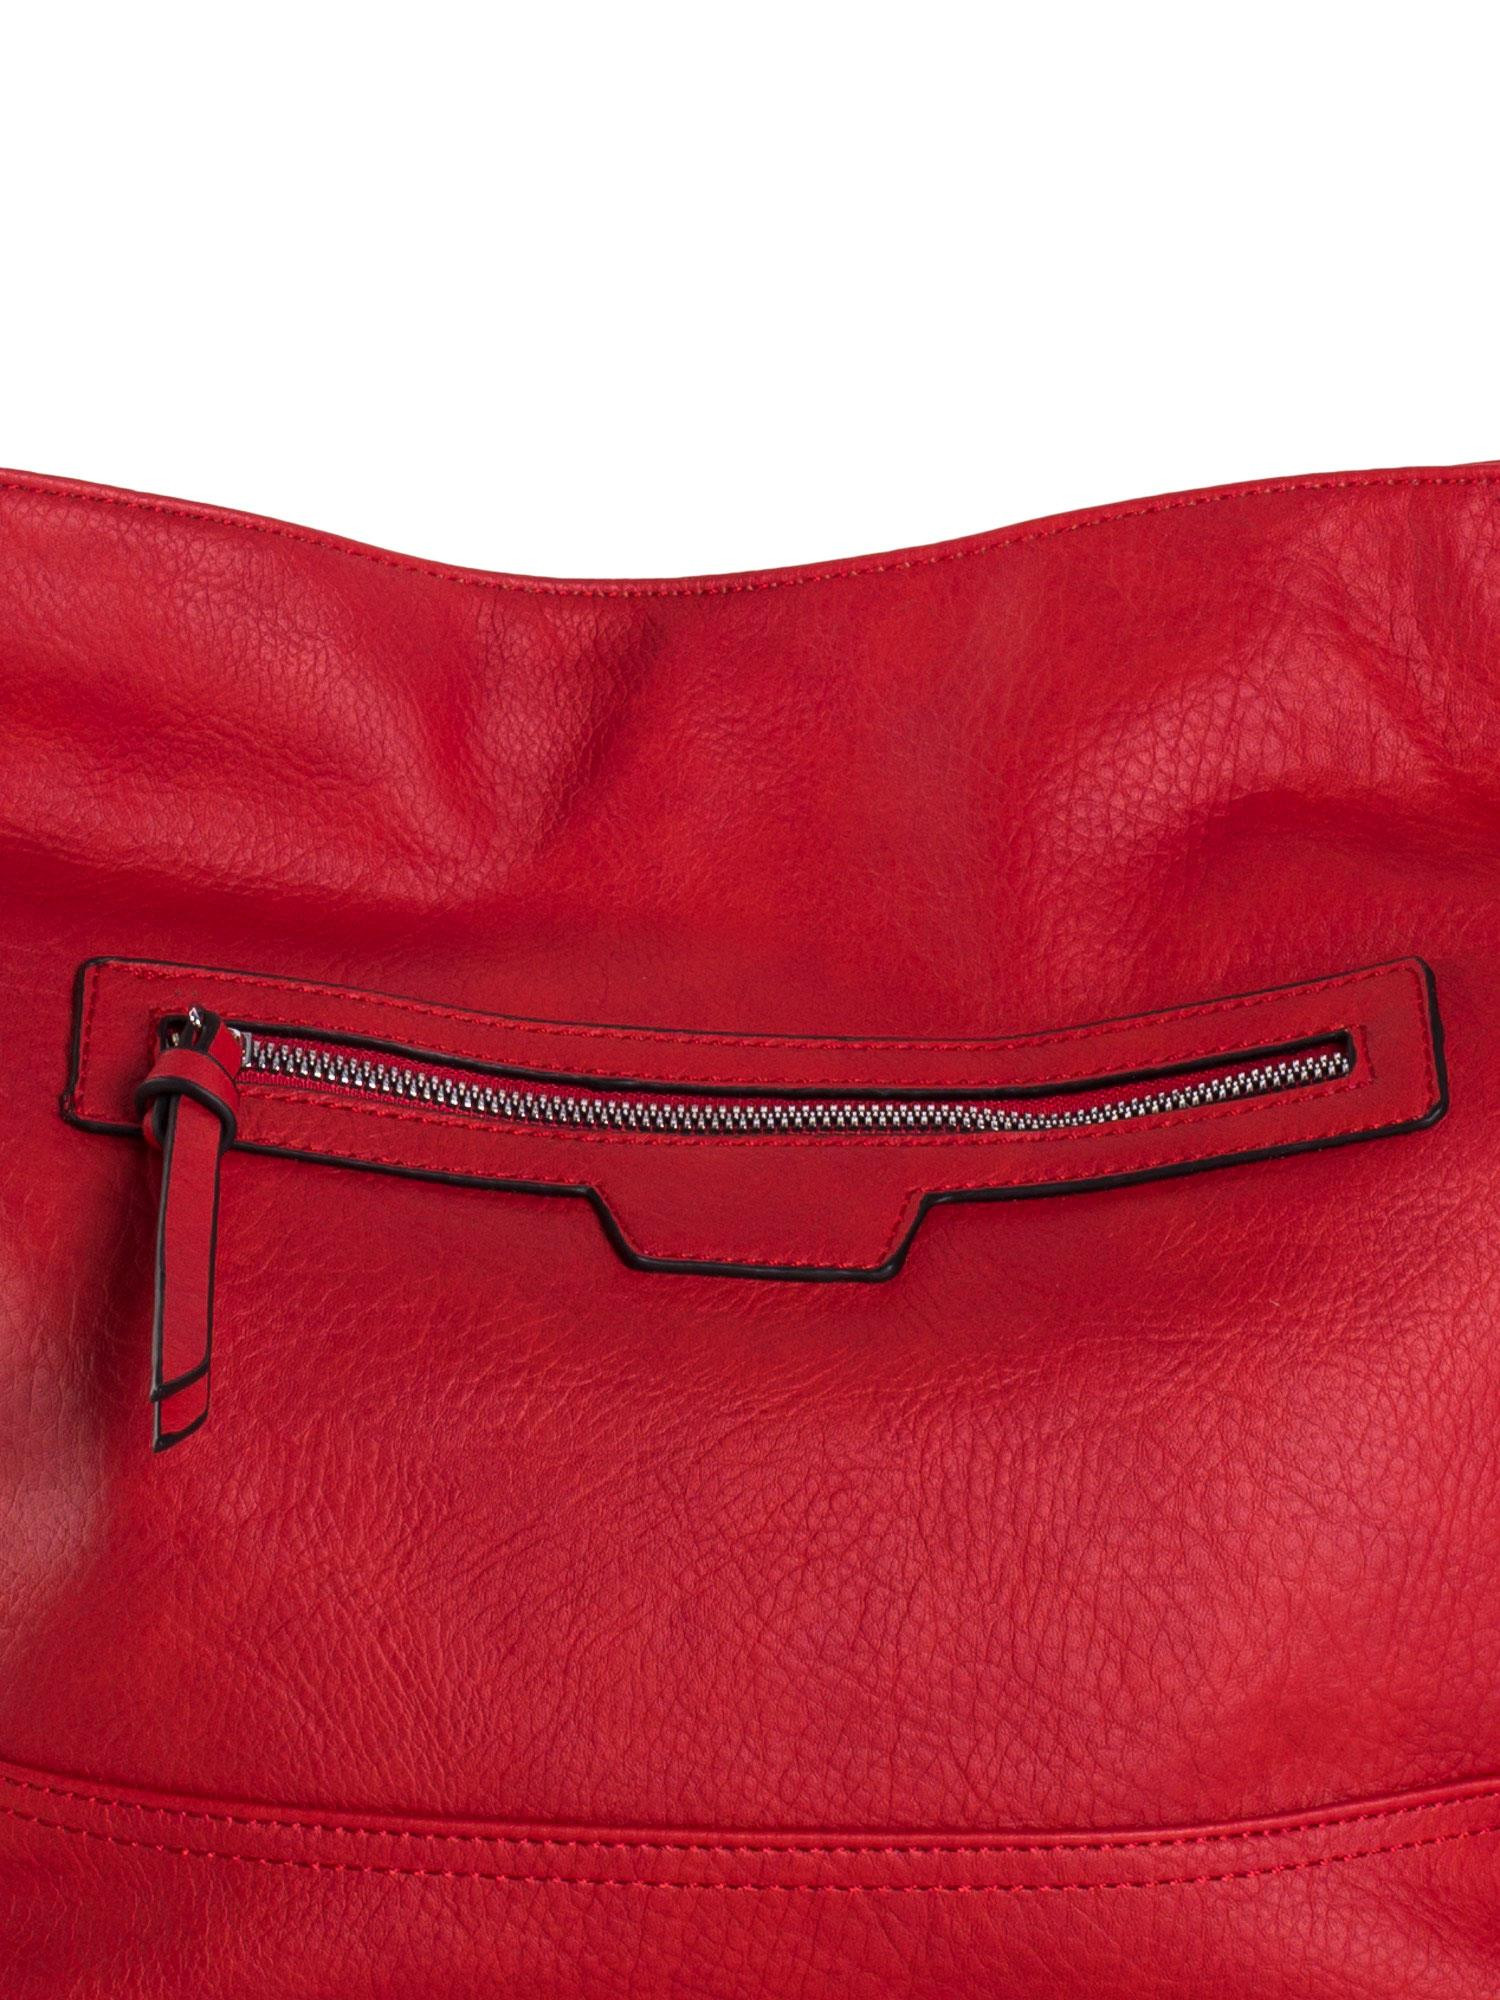 Dámská kabelka OW TR 2070 červená jedna velikost